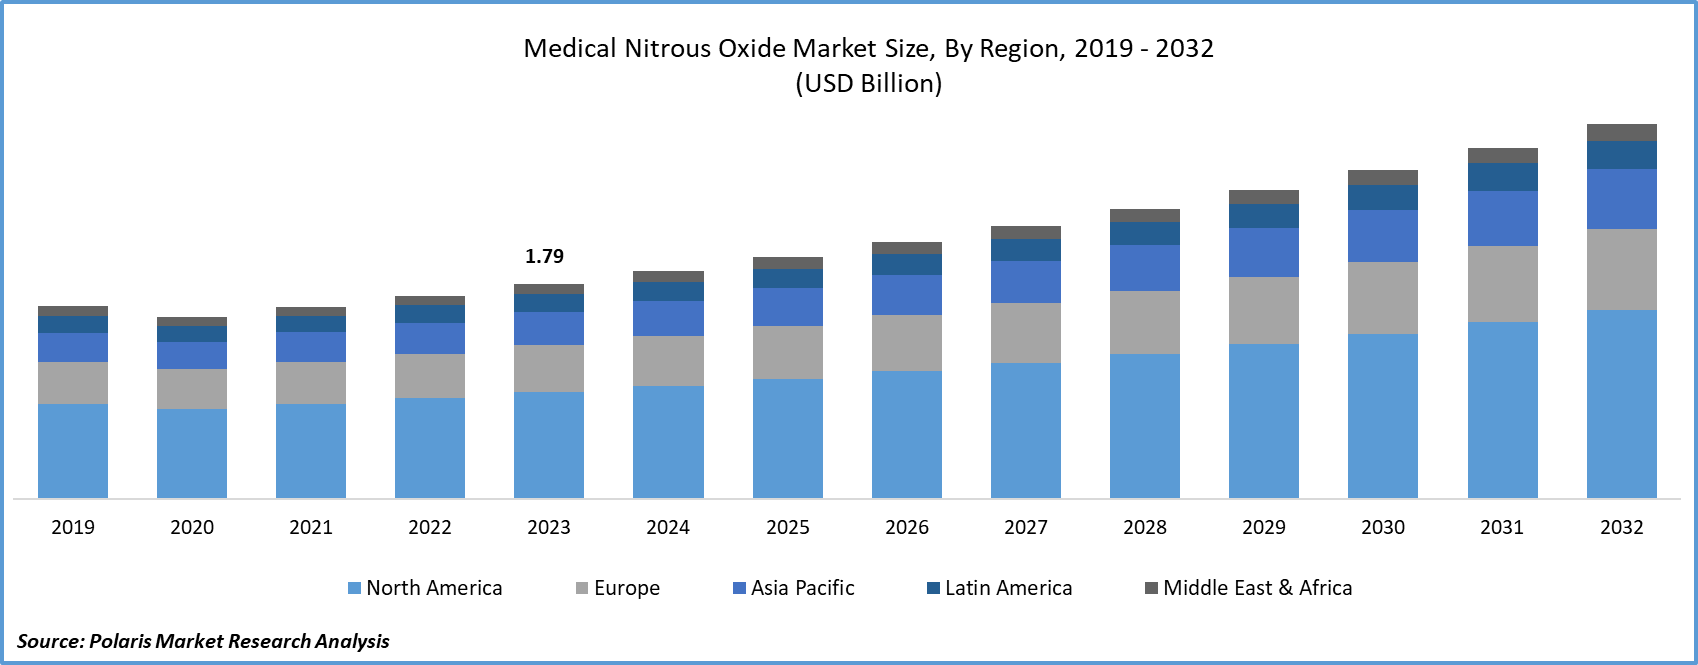 Medical Nitrous Oxide Market Size